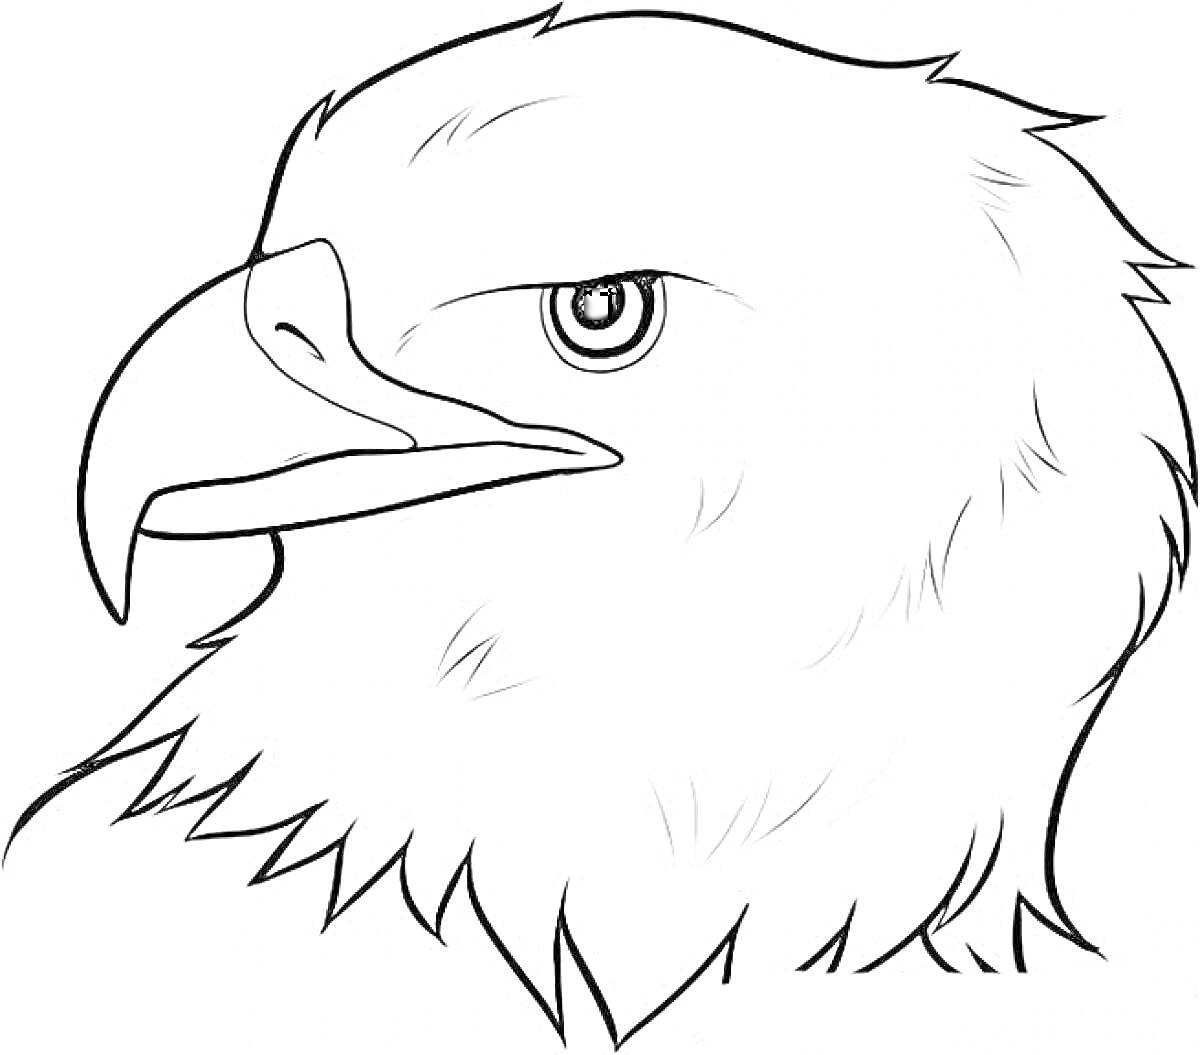 Портрет орла с крупным планом головы, детализированное перо, острый клюв и выразительный глаз.